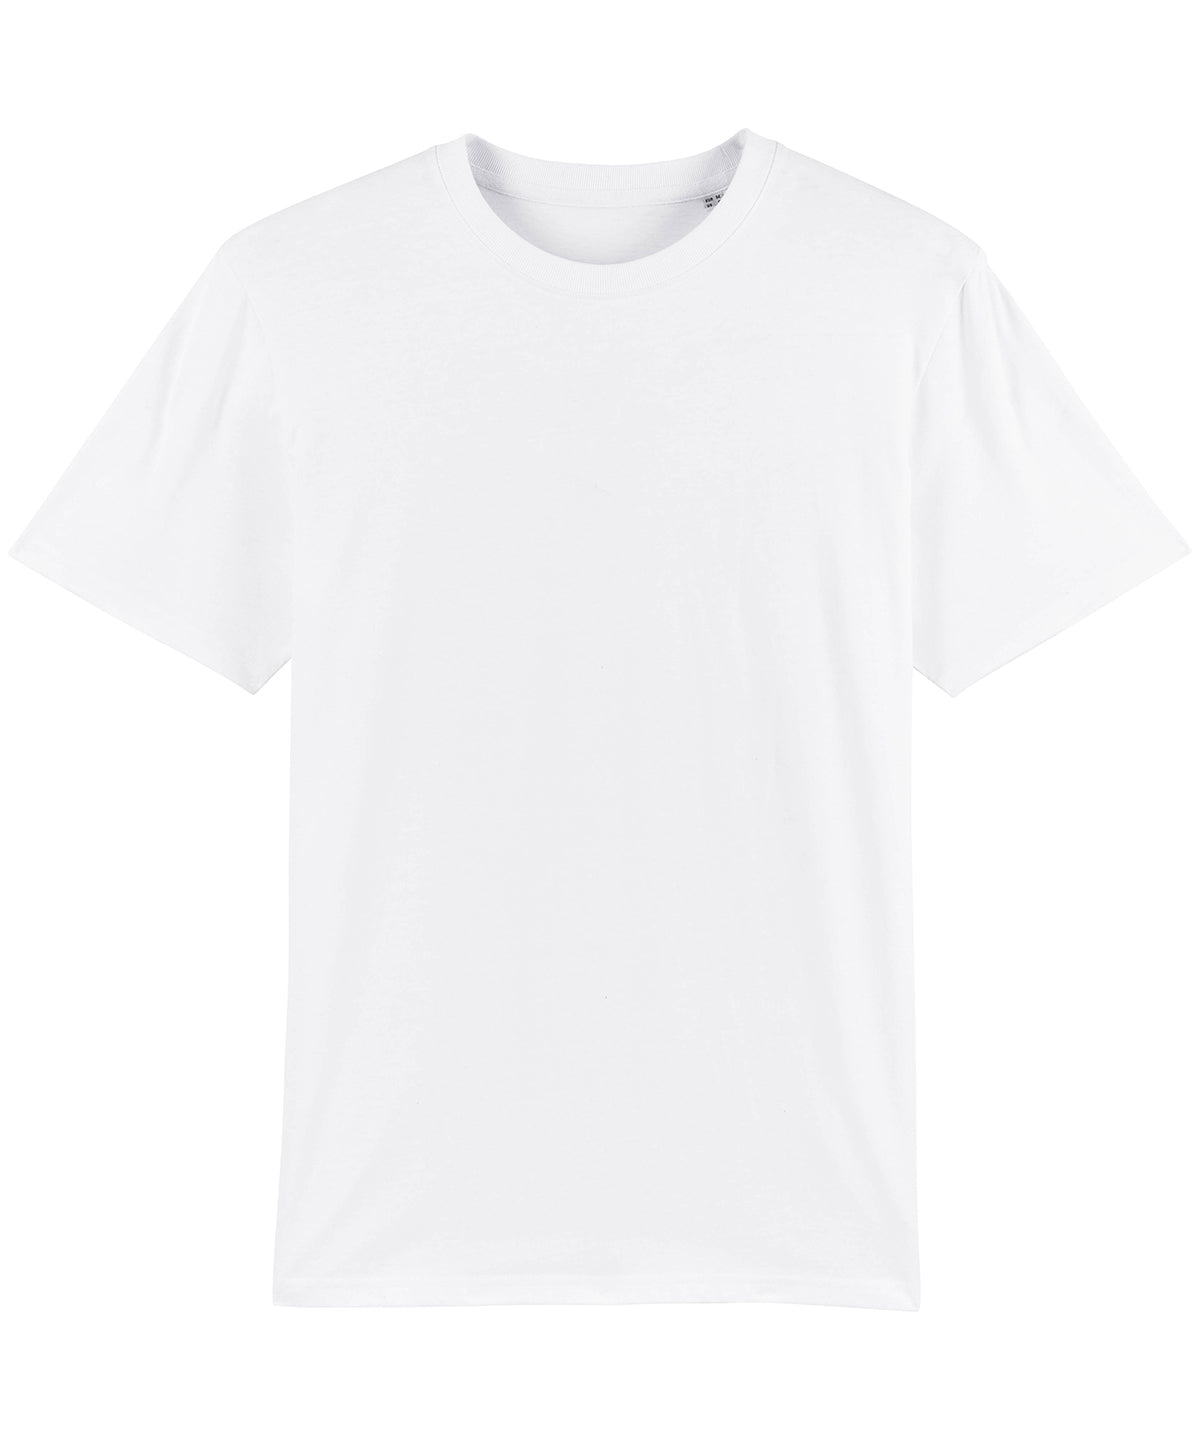 Stuttermabolir - Sparker, Unisex Heavy T-shirt (STTM559)